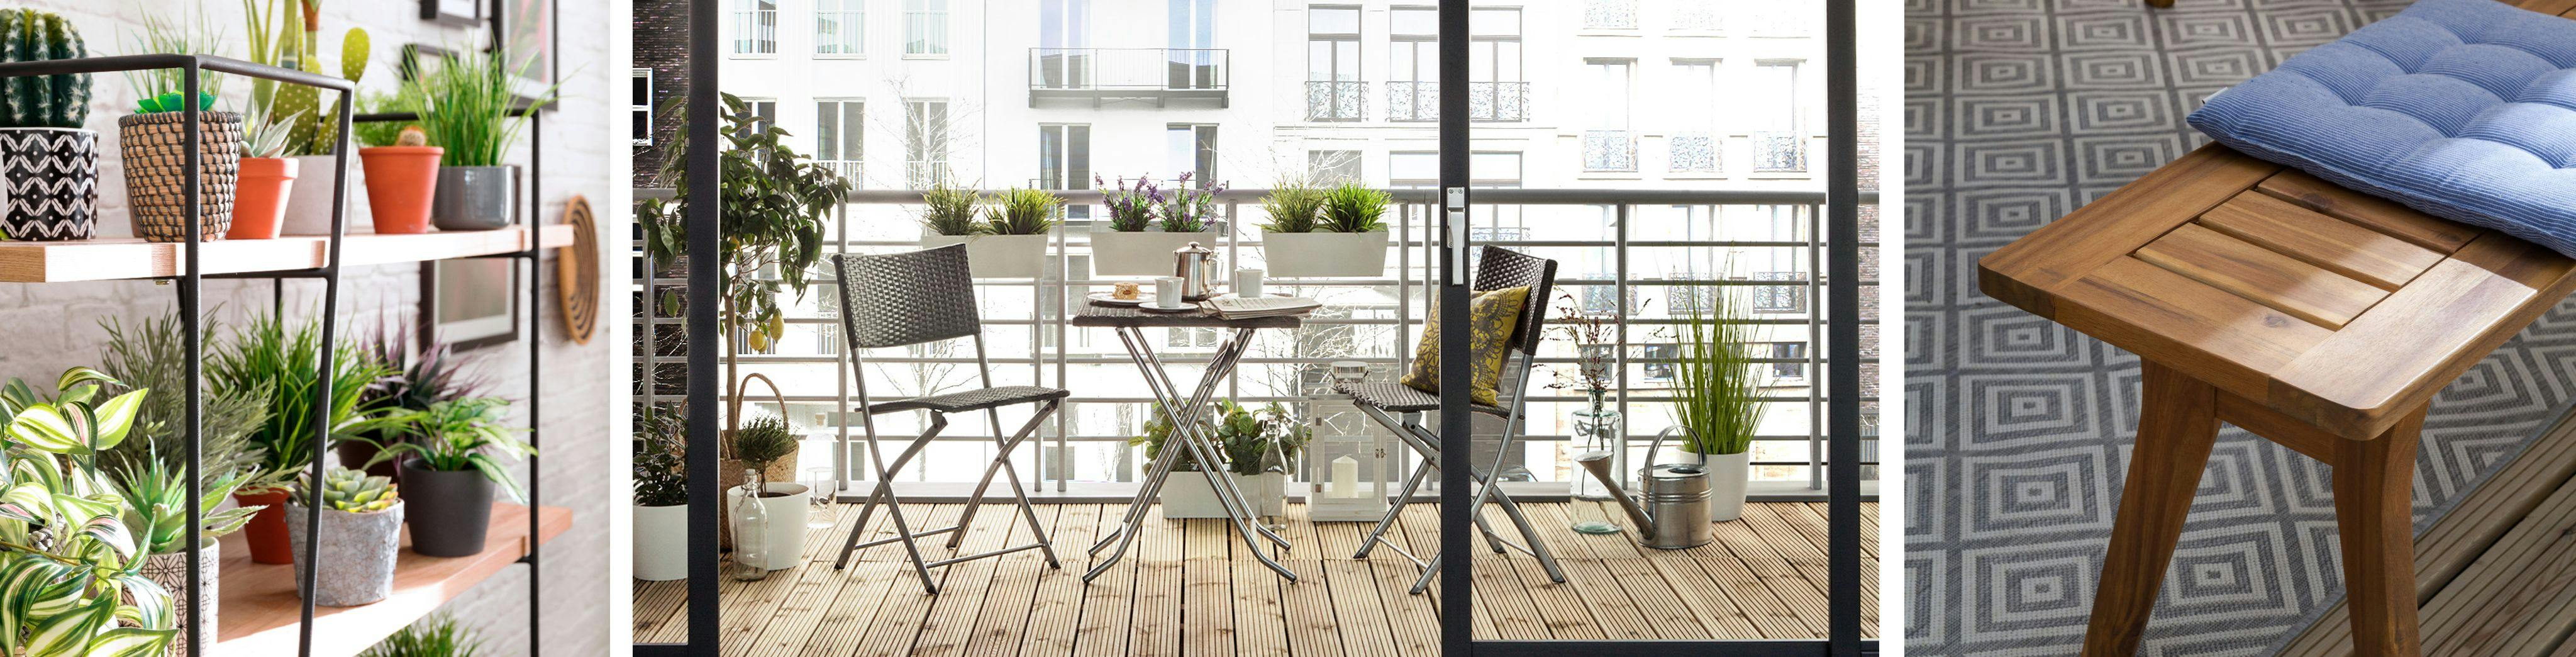 Aménagement du balcon : créer une table d'angle pour le balcon